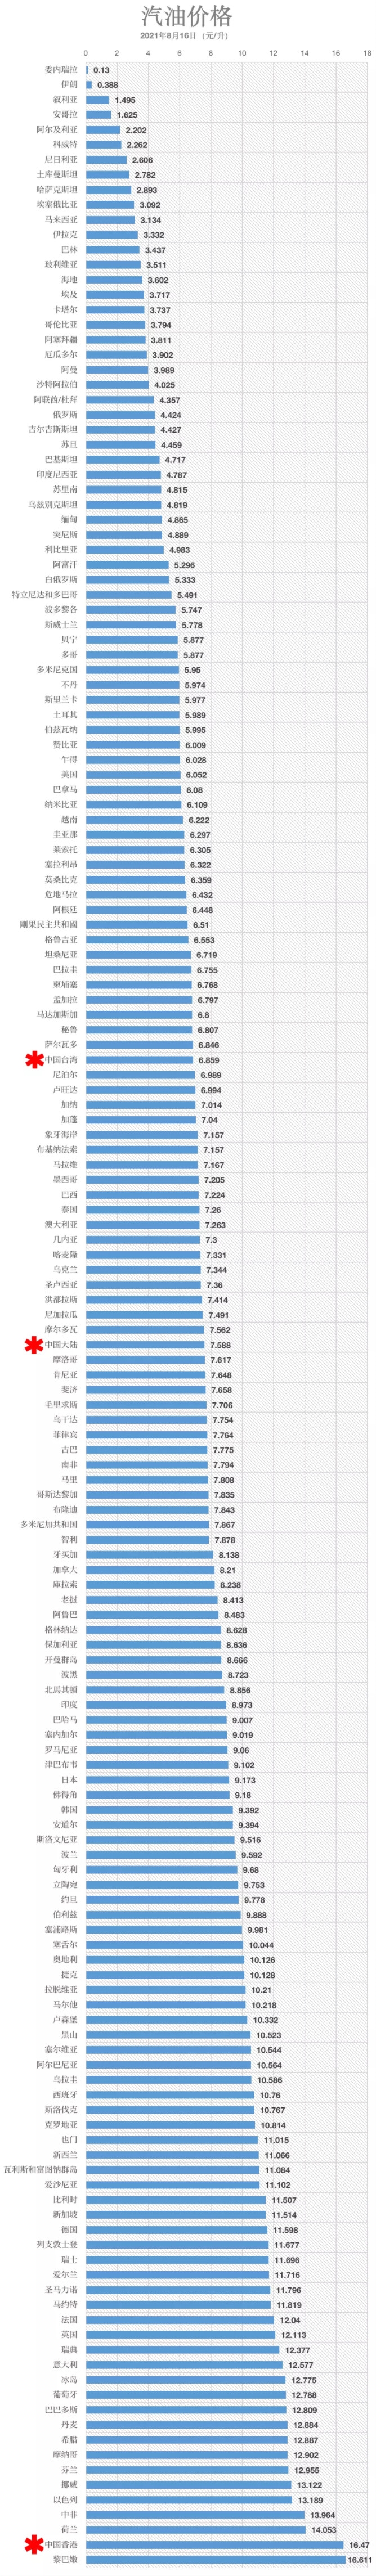 中国成品油价格在世界上位于什么水平？